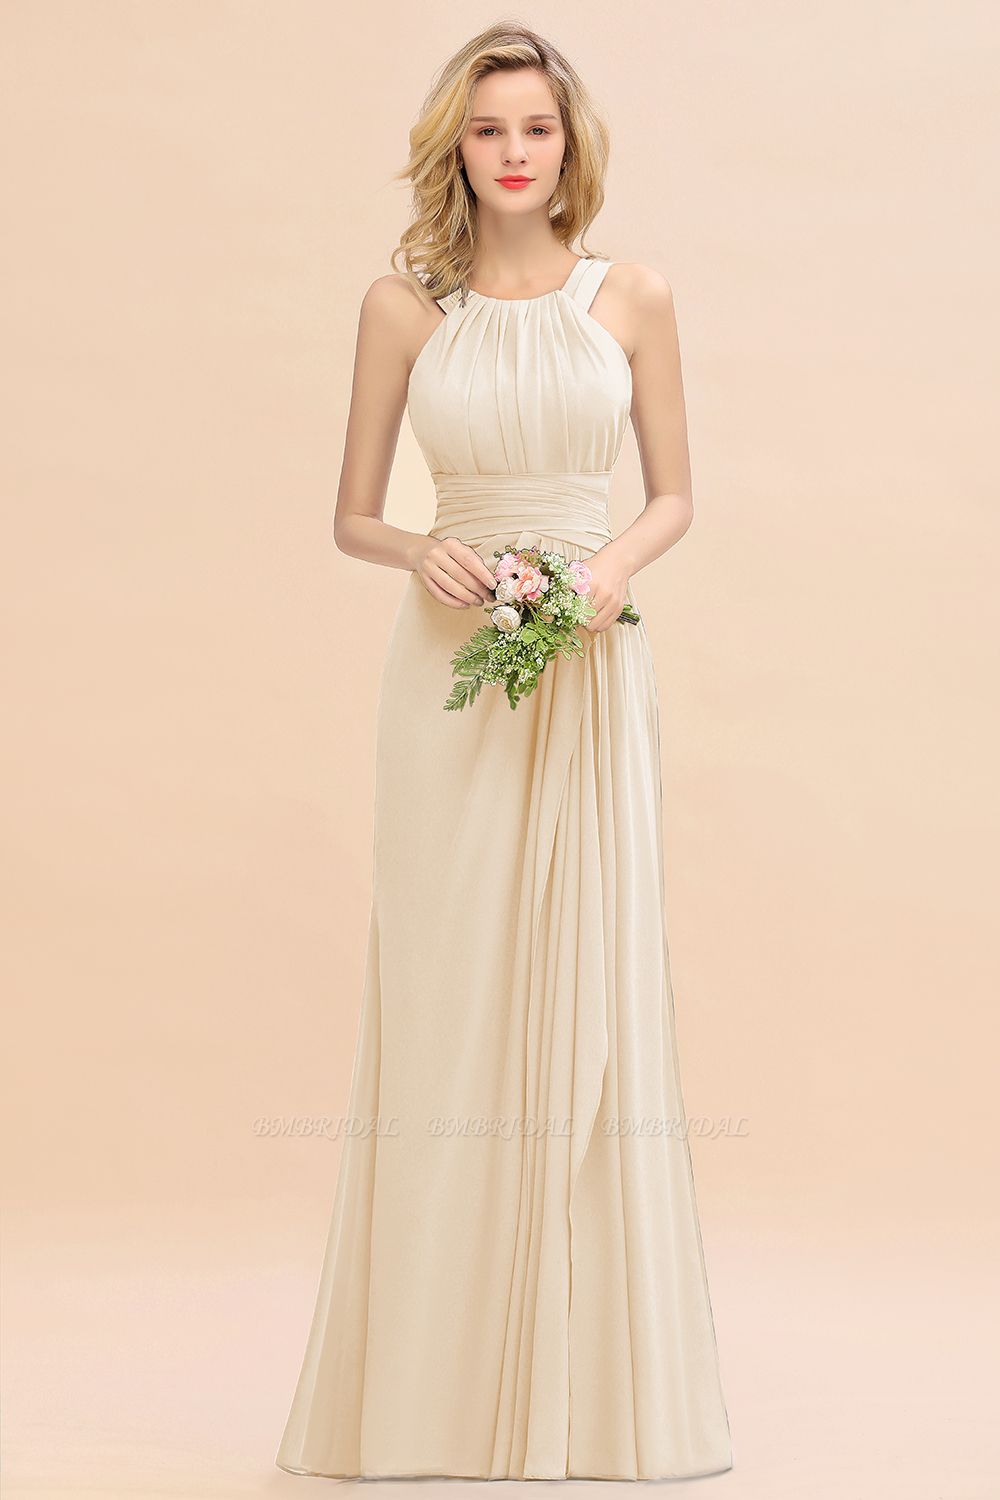 BMbridal Elegant Round Neck Sleeveless Bridesmaid Dress with Ruffles